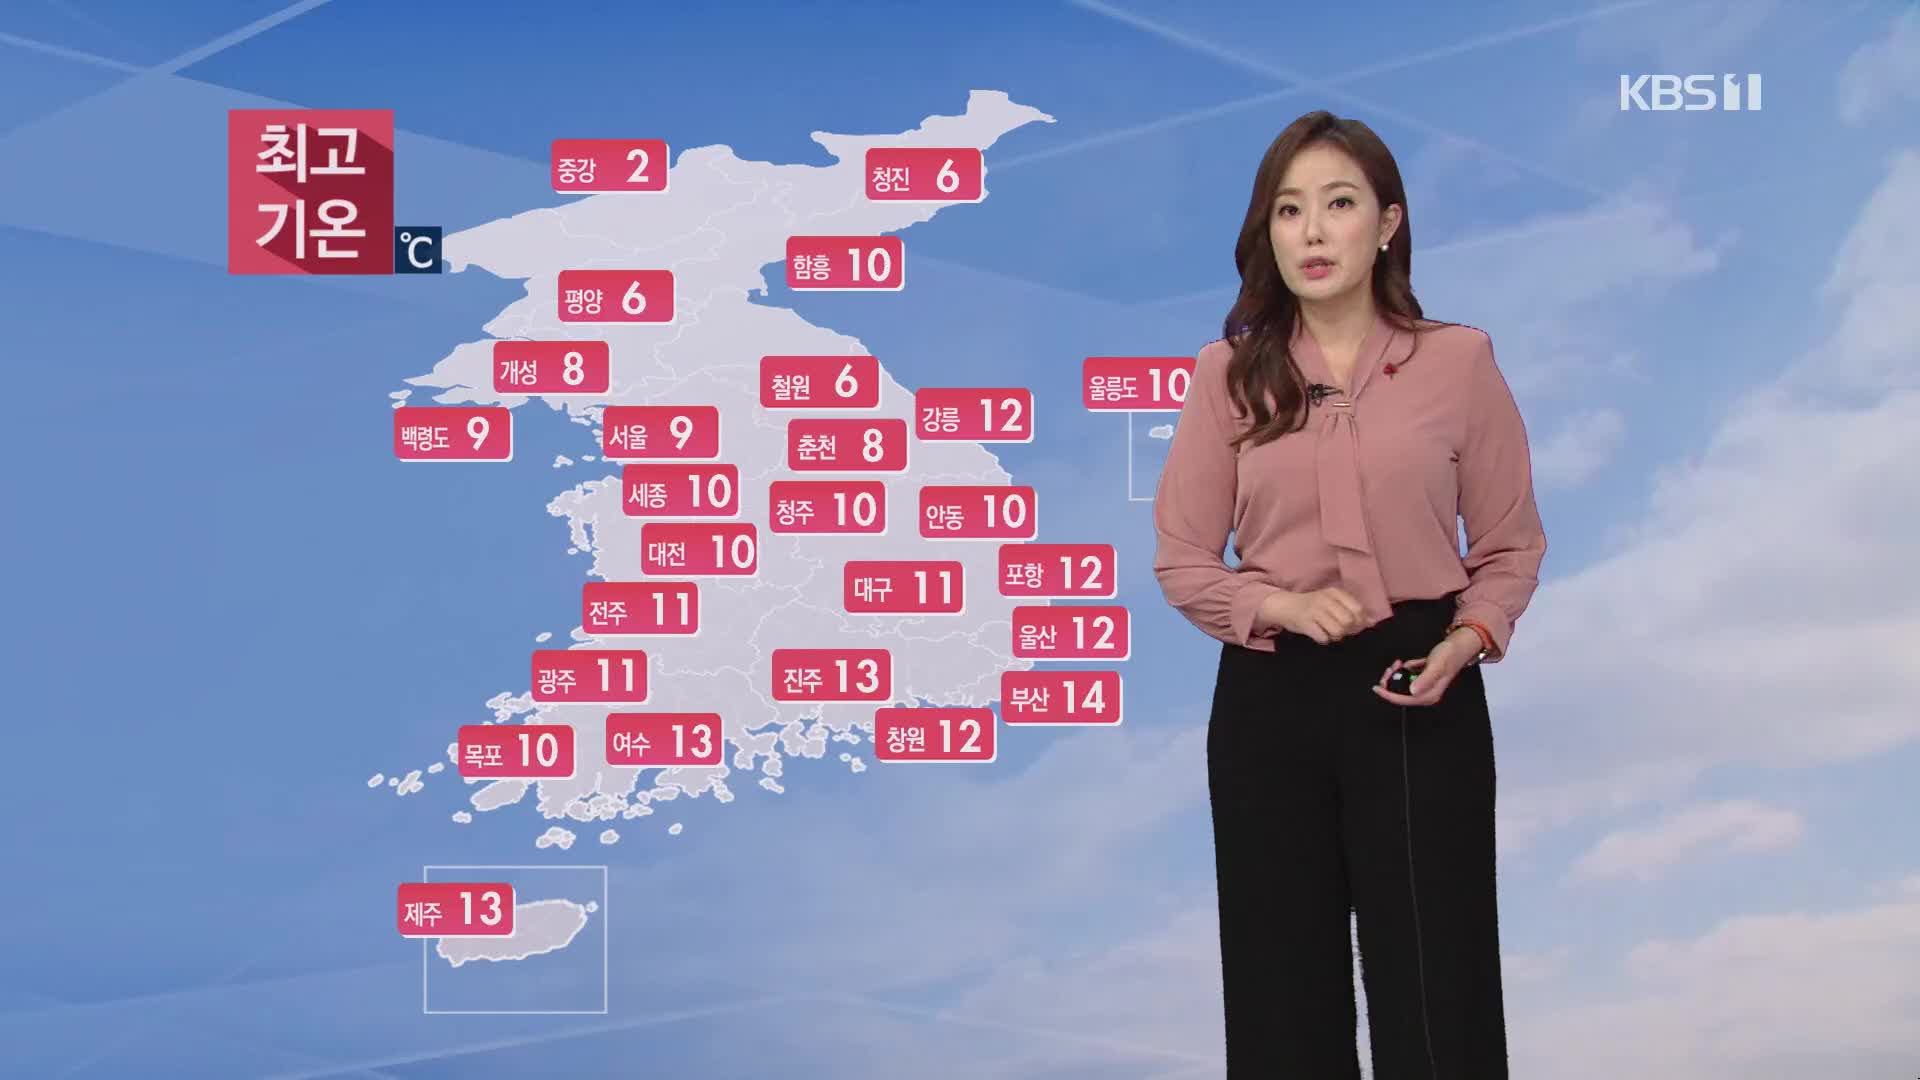 [날씨] 내일도 미세먼지 농도 높아…서울·경기 북부 오전 ‘매우나쁨’